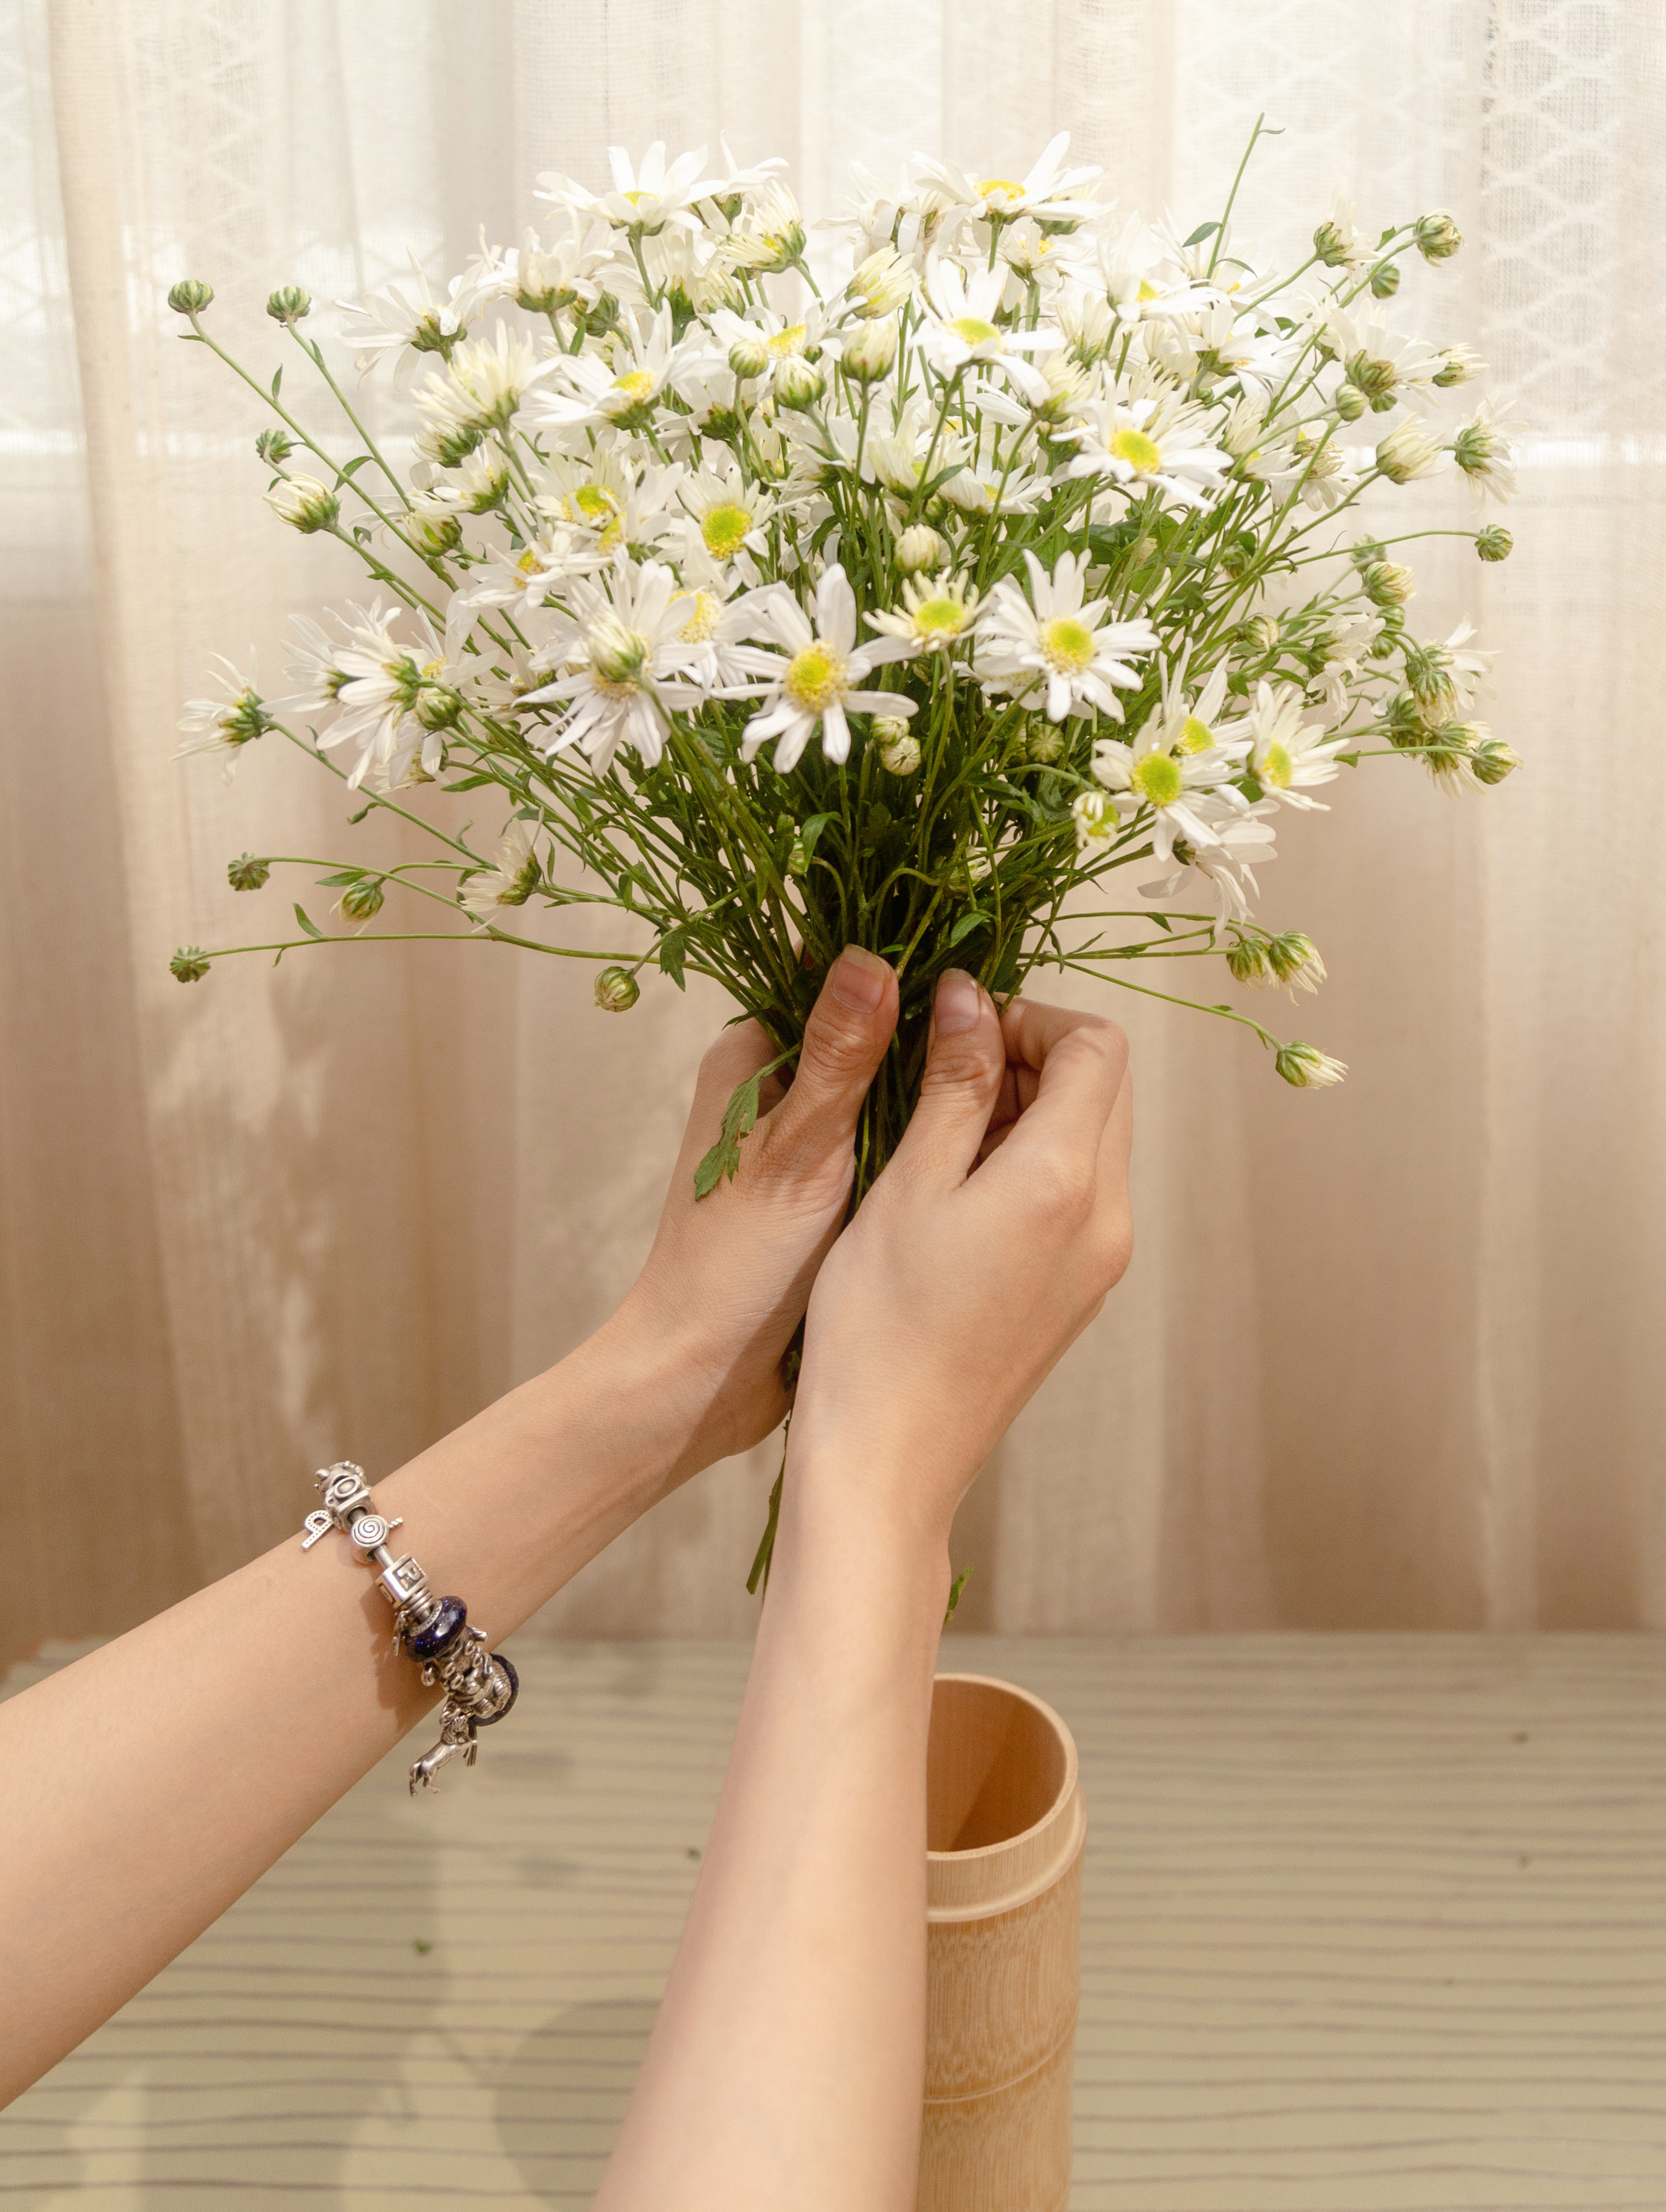 Cách cắm hoa cúc hoa mi tại nhà